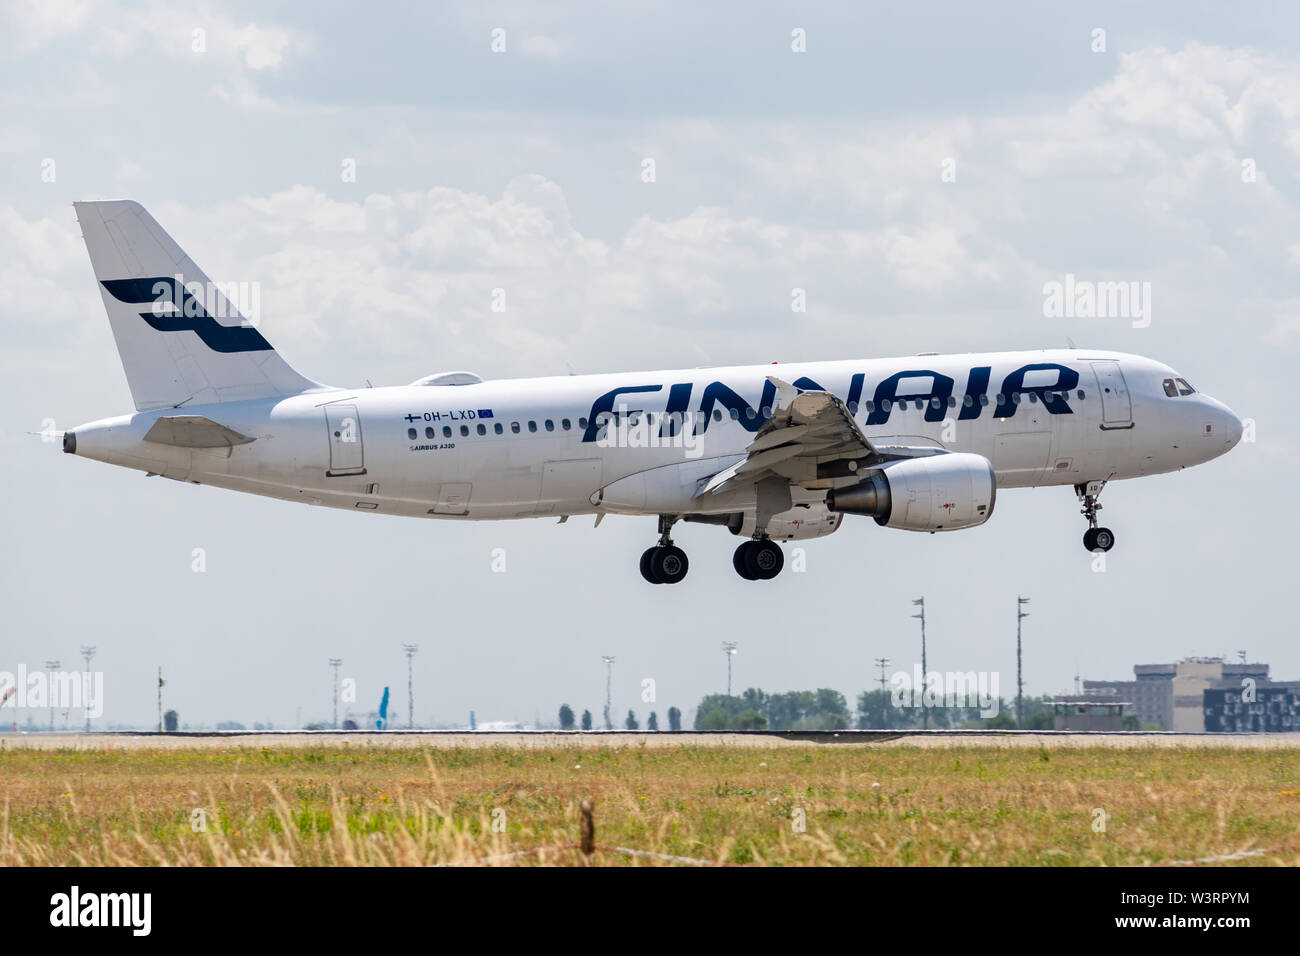 OH-LXD Airbus A320-214-1588 le 11 juillet 2019, l'atterrissage sur les pistes de Paris Roissy à la fin de vol Finnair AY2666 d'Helsinki Banque D'Images